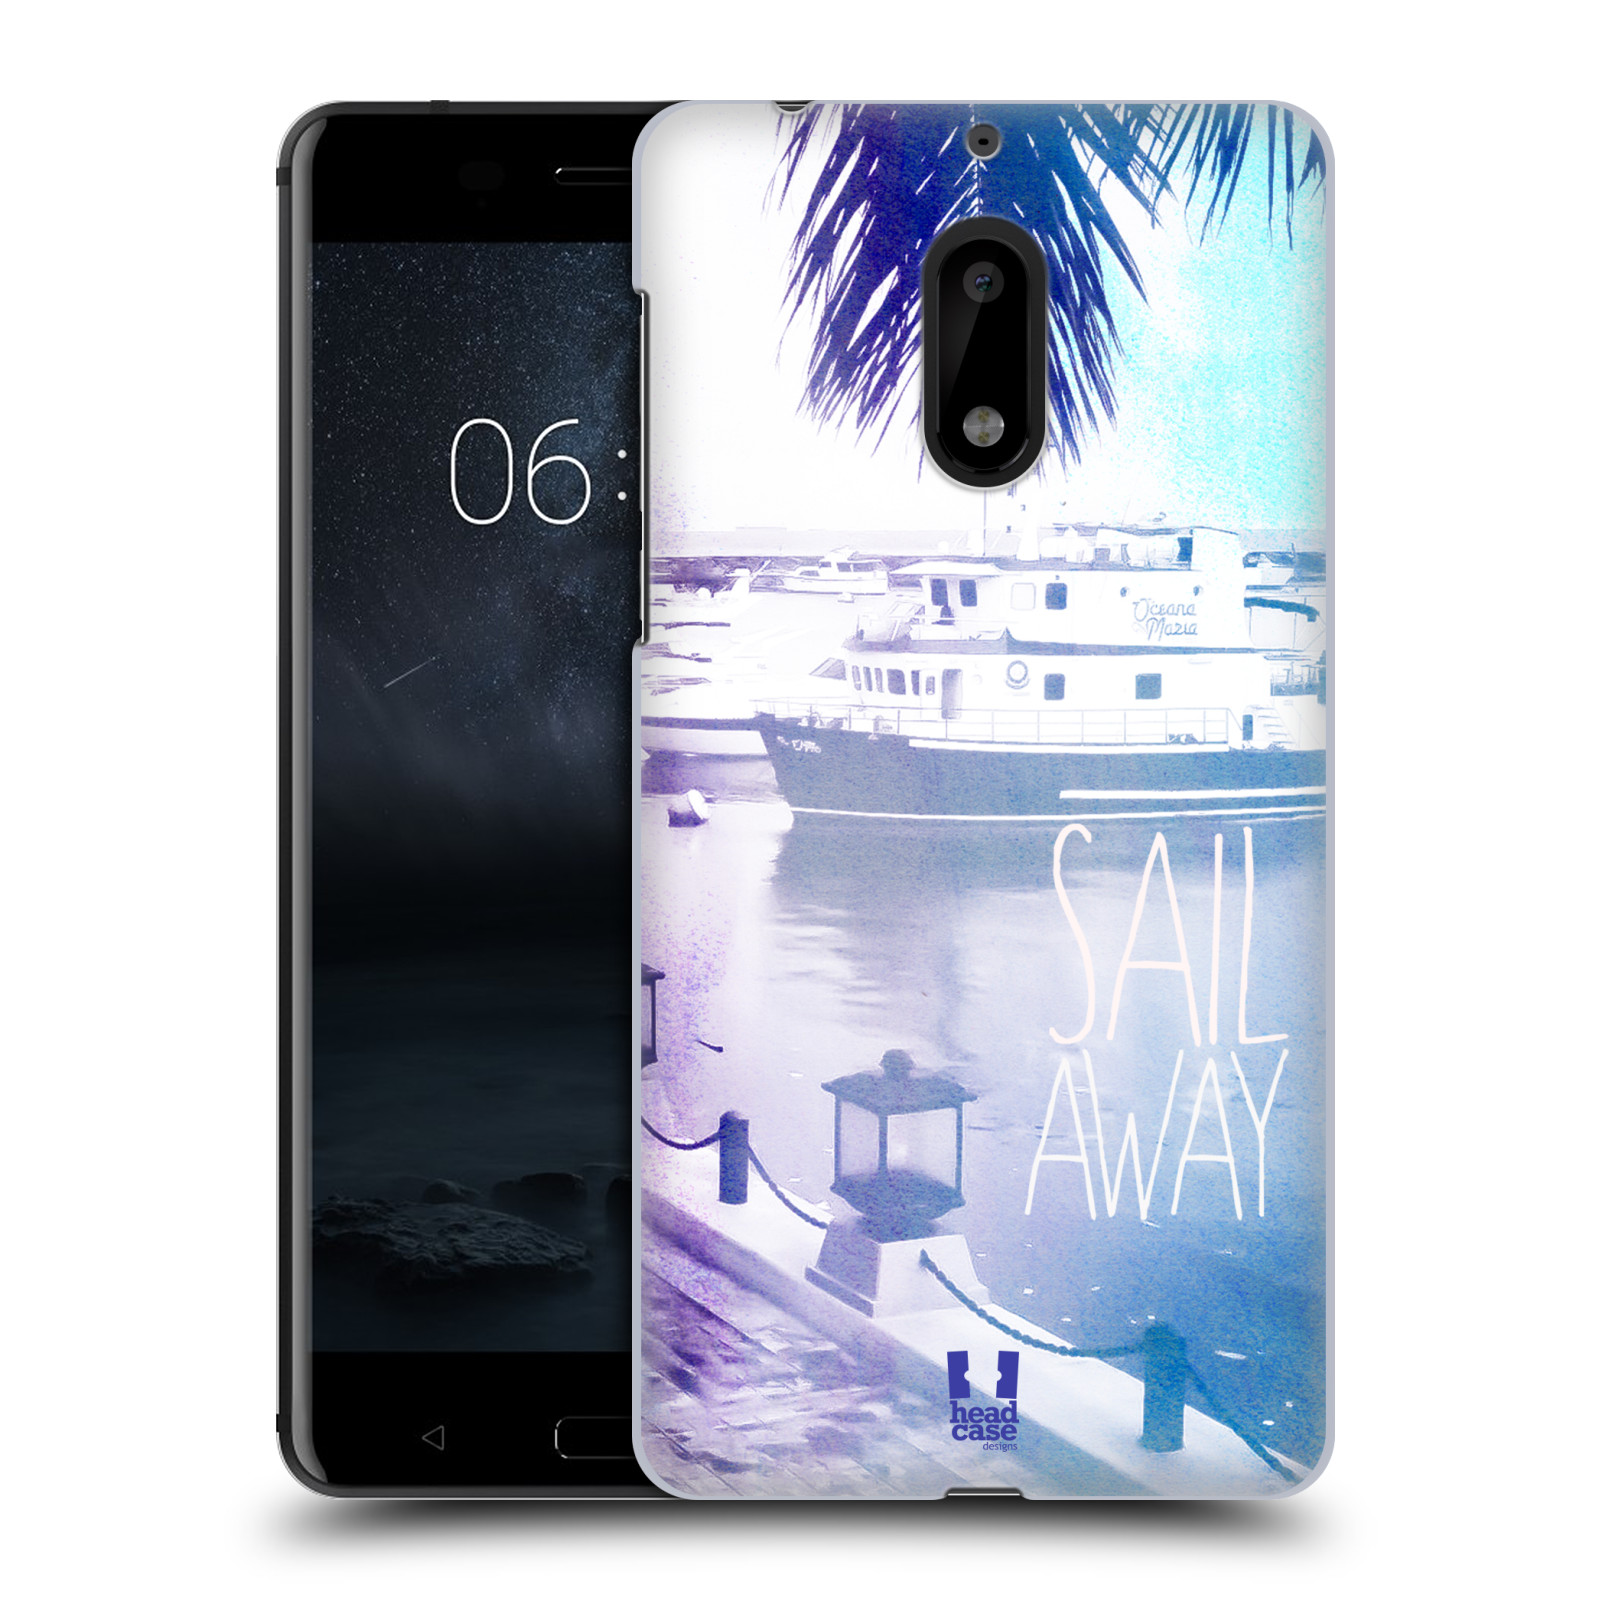 HEAD CASE plastový obal na mobil Nokia 6 vzor Pozitivní vlny MODRÁ, přístav s loděmi SAIL AWAY